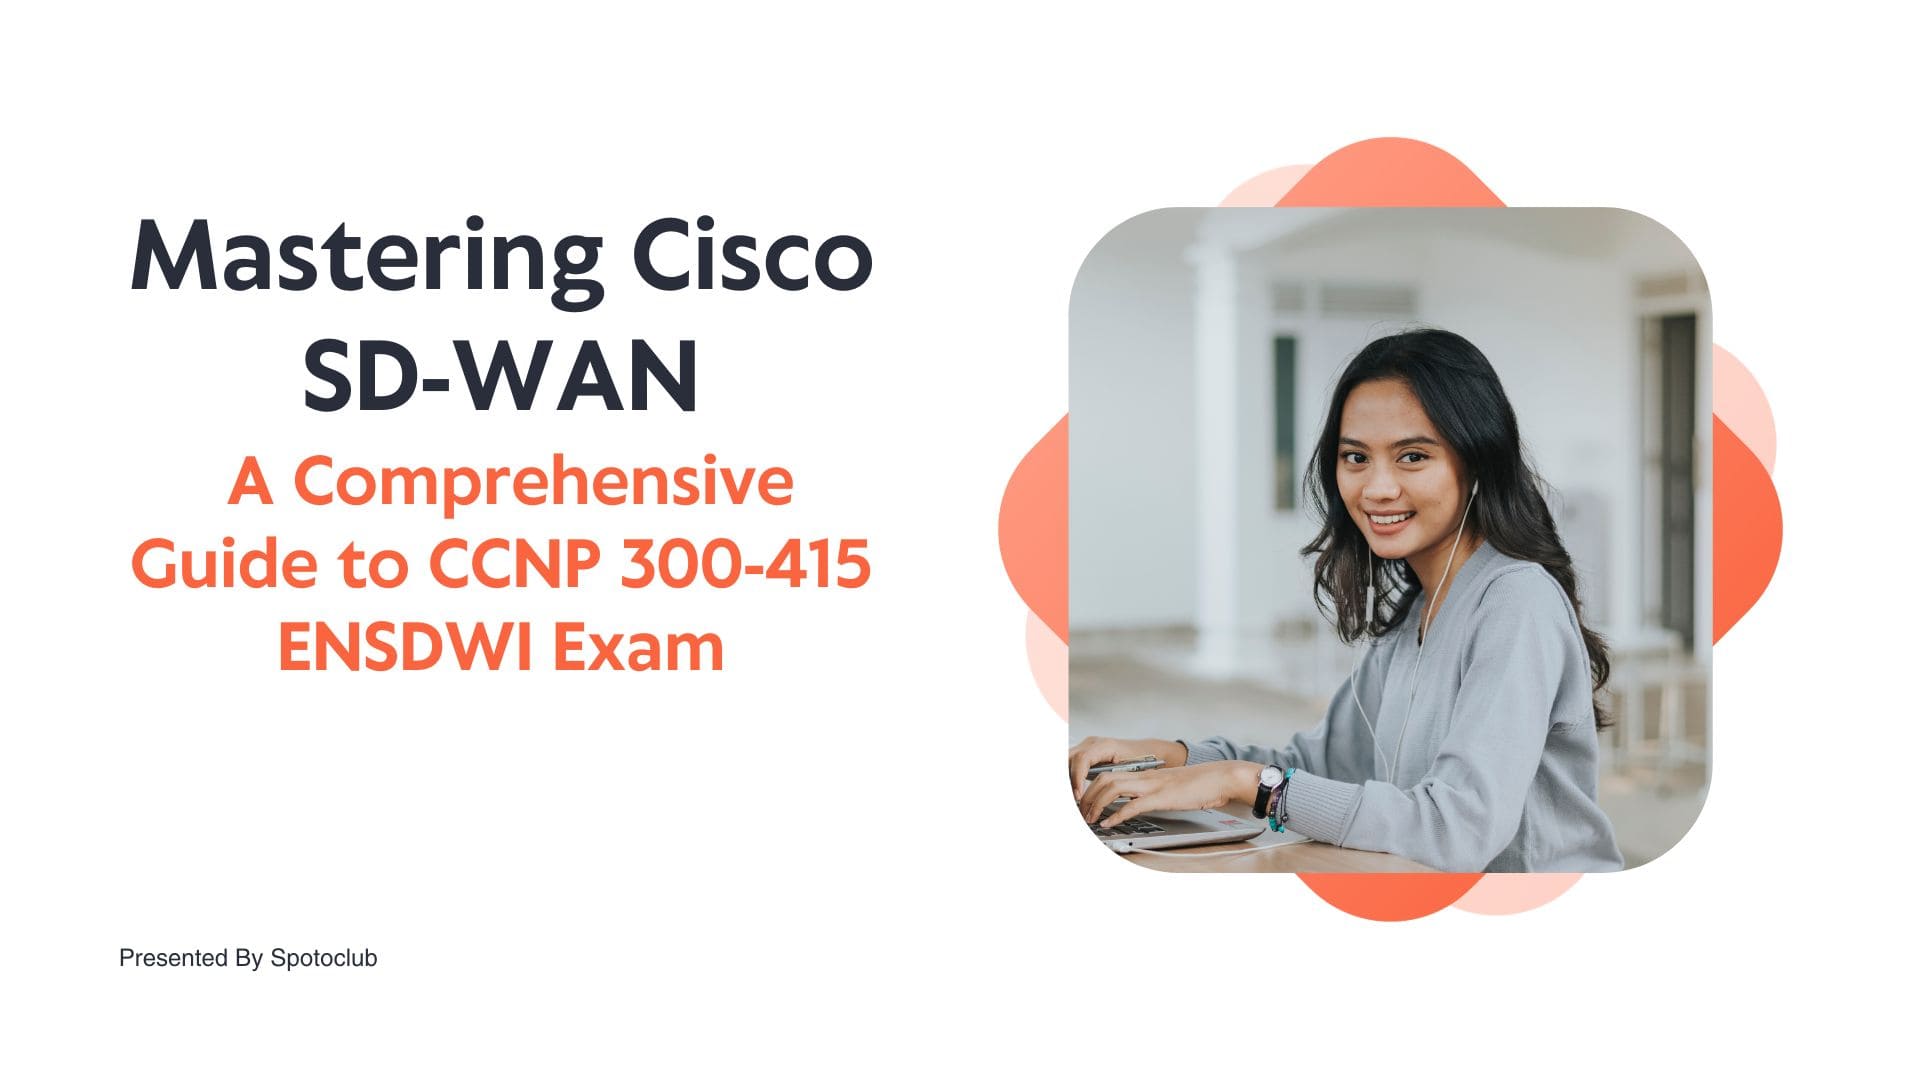 Cisco SD-WAN: A Comprehensive Guide